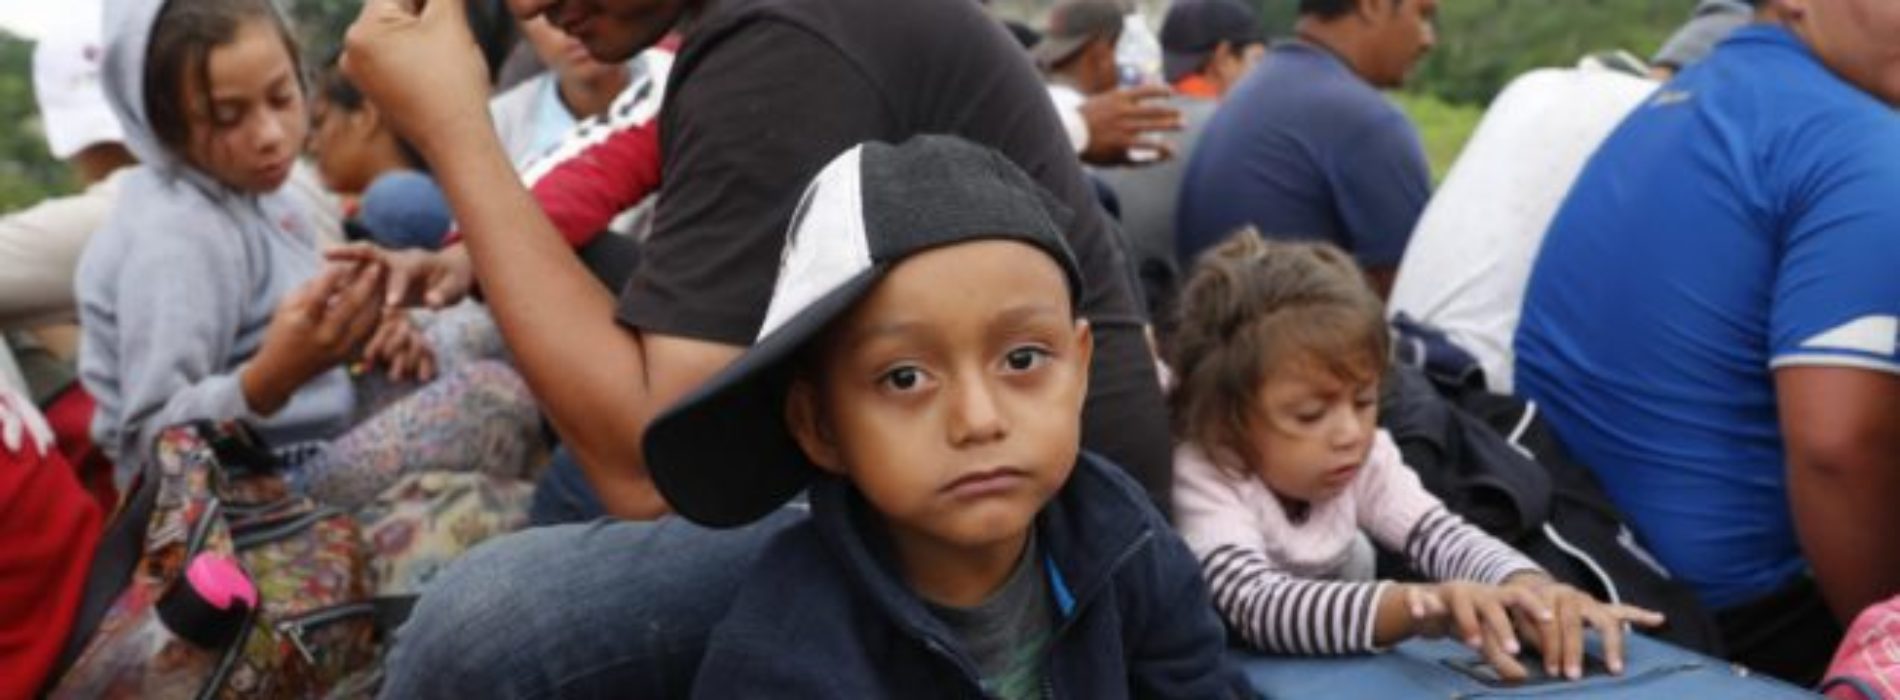 Niños migrantes en Oaxaca padecen enfermedades, segregación,
trauma….